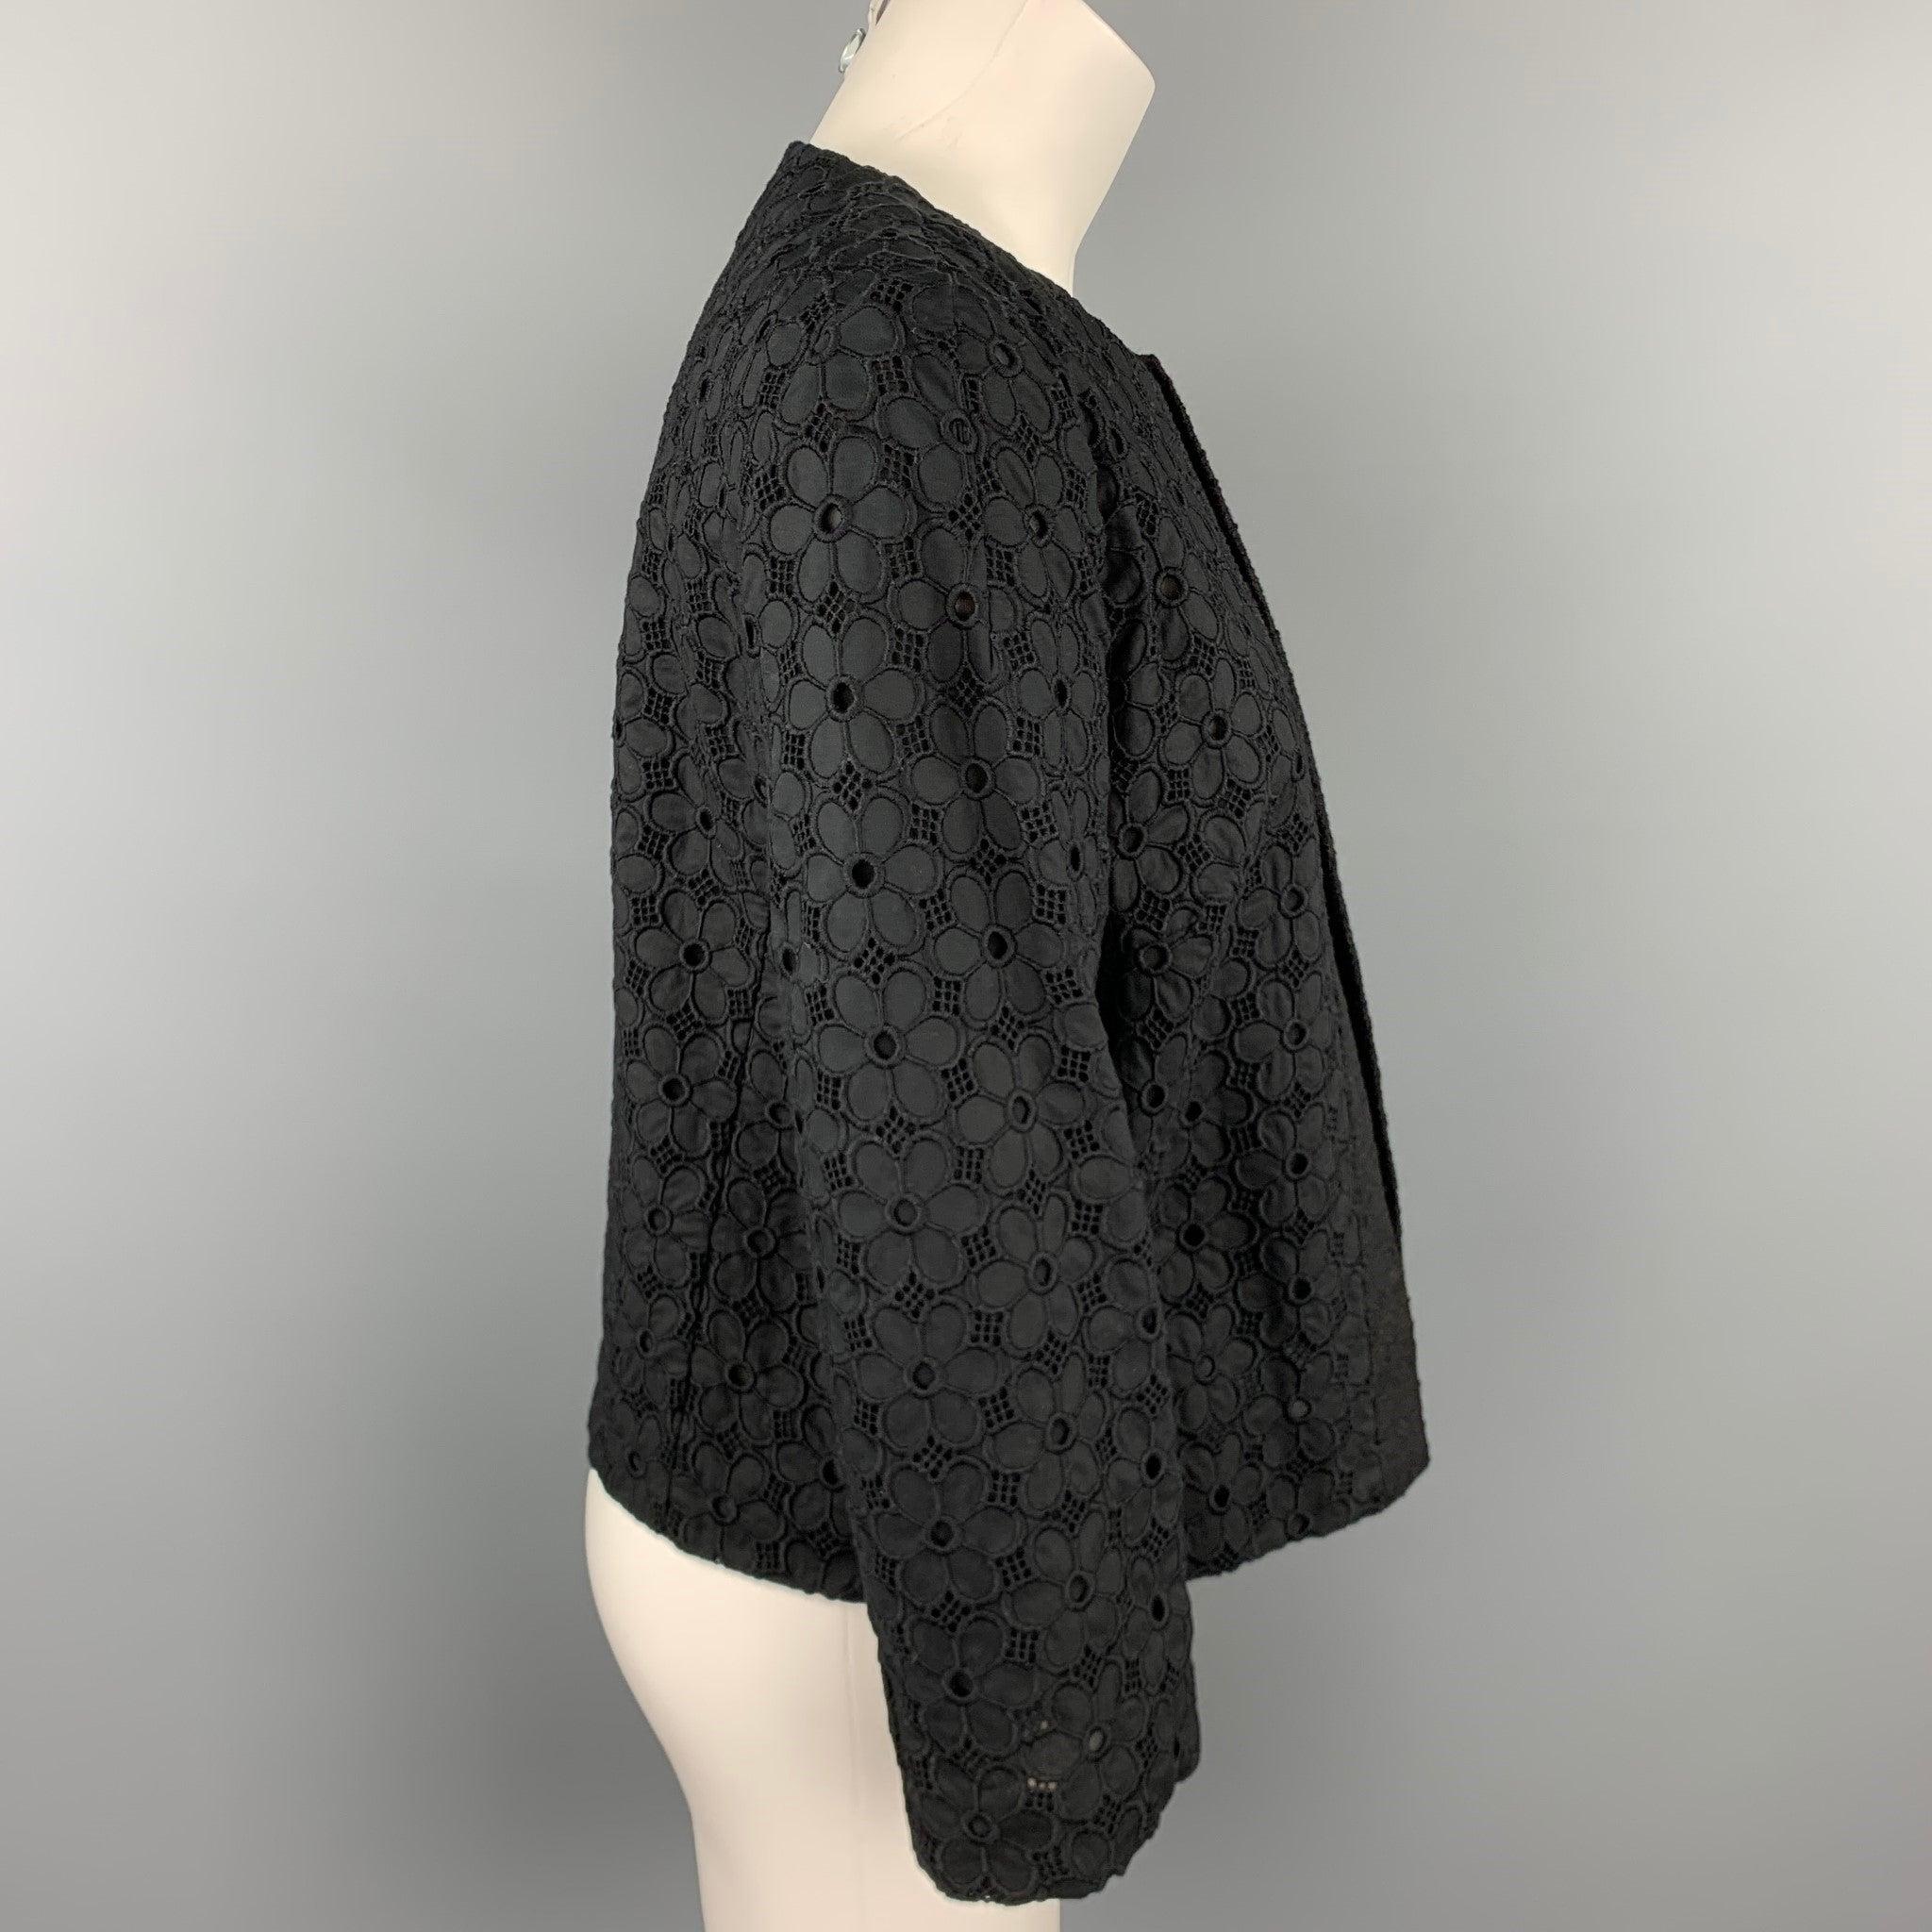 La veste GIAMBATTISTA VALLI se compose d'un coton noir à œillets et d'une doublure en soie. Elle est ouverte sur le devant. Fabriqué en Italie.
Etat d'occasion. 

Marqué :   Pas de taille marquée 

Mesures : 
 
Épaule : 15.5 pouces 
Poitrine : 38